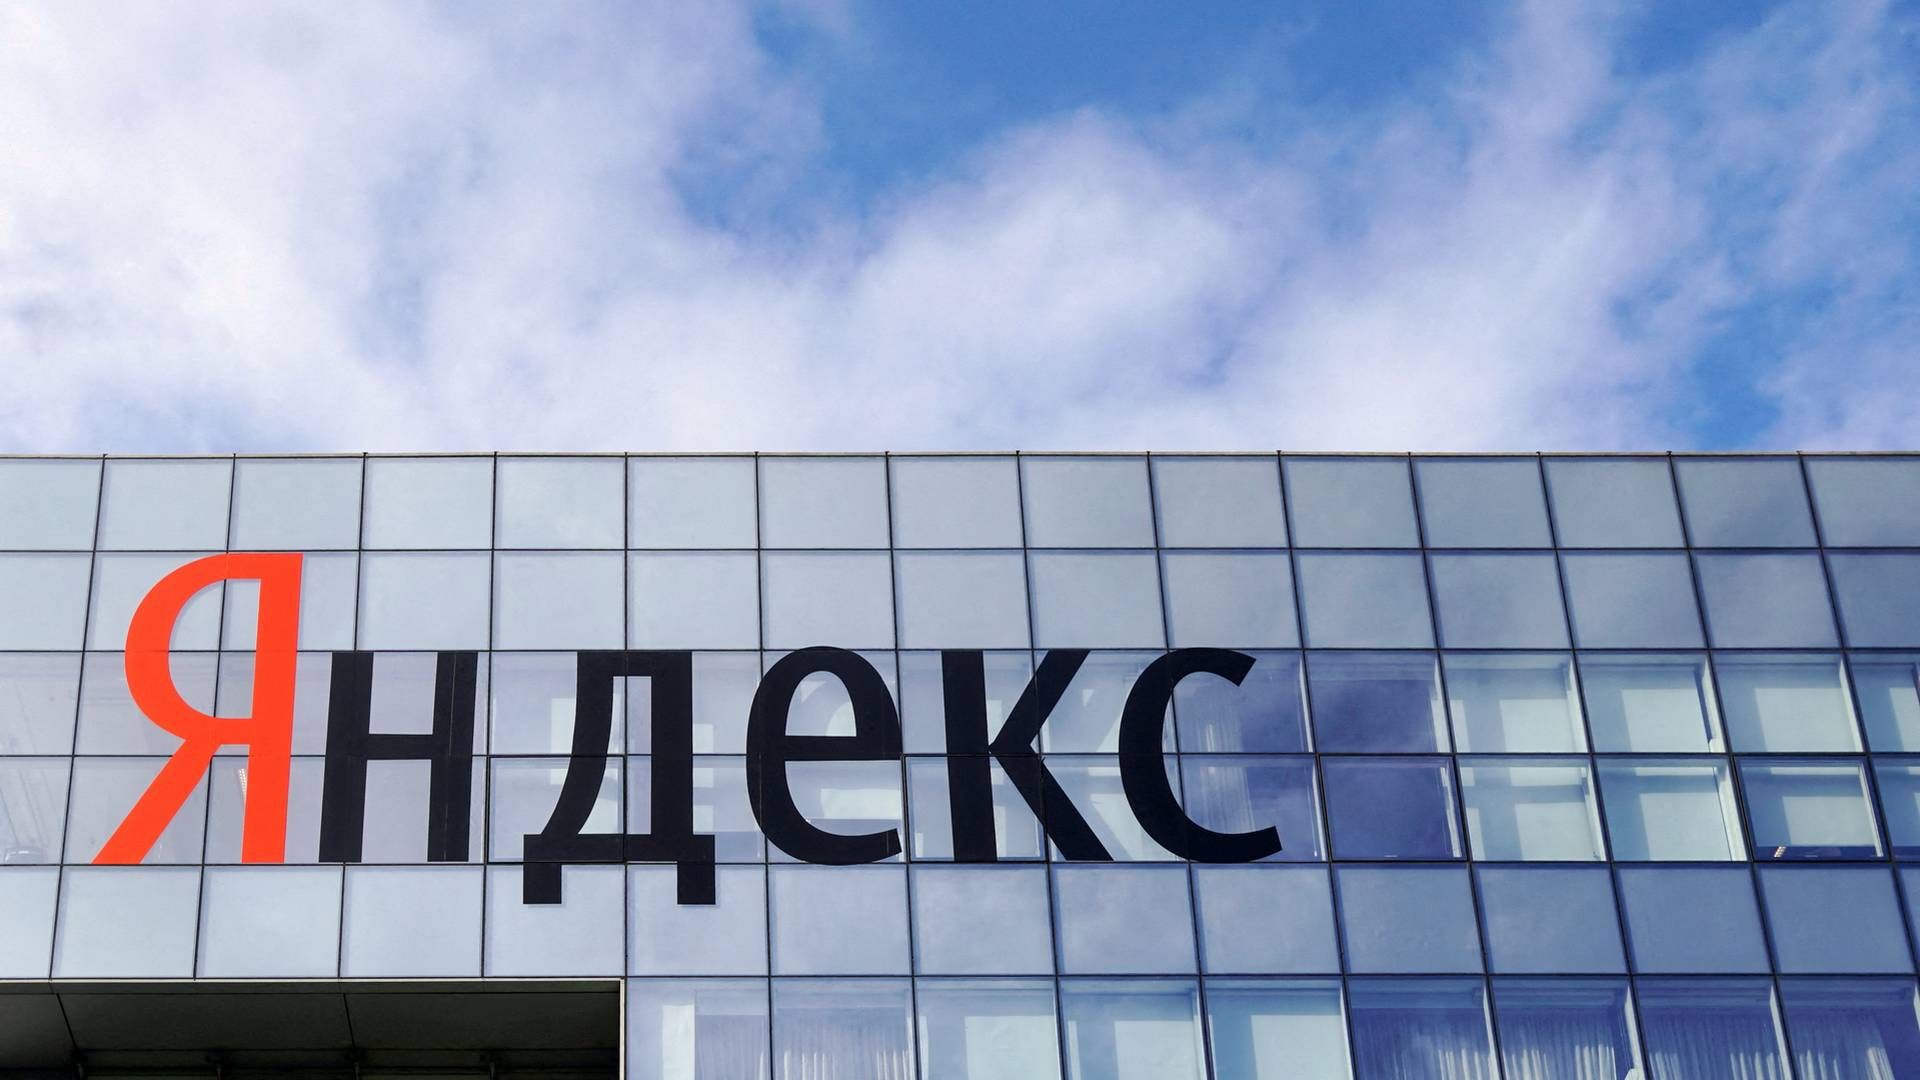 Teknologiselskabet Yandex forsøger angiveligt at slippe ud af Rusland. | Foto: Shamil Zhumatov/REUTERS / X00499